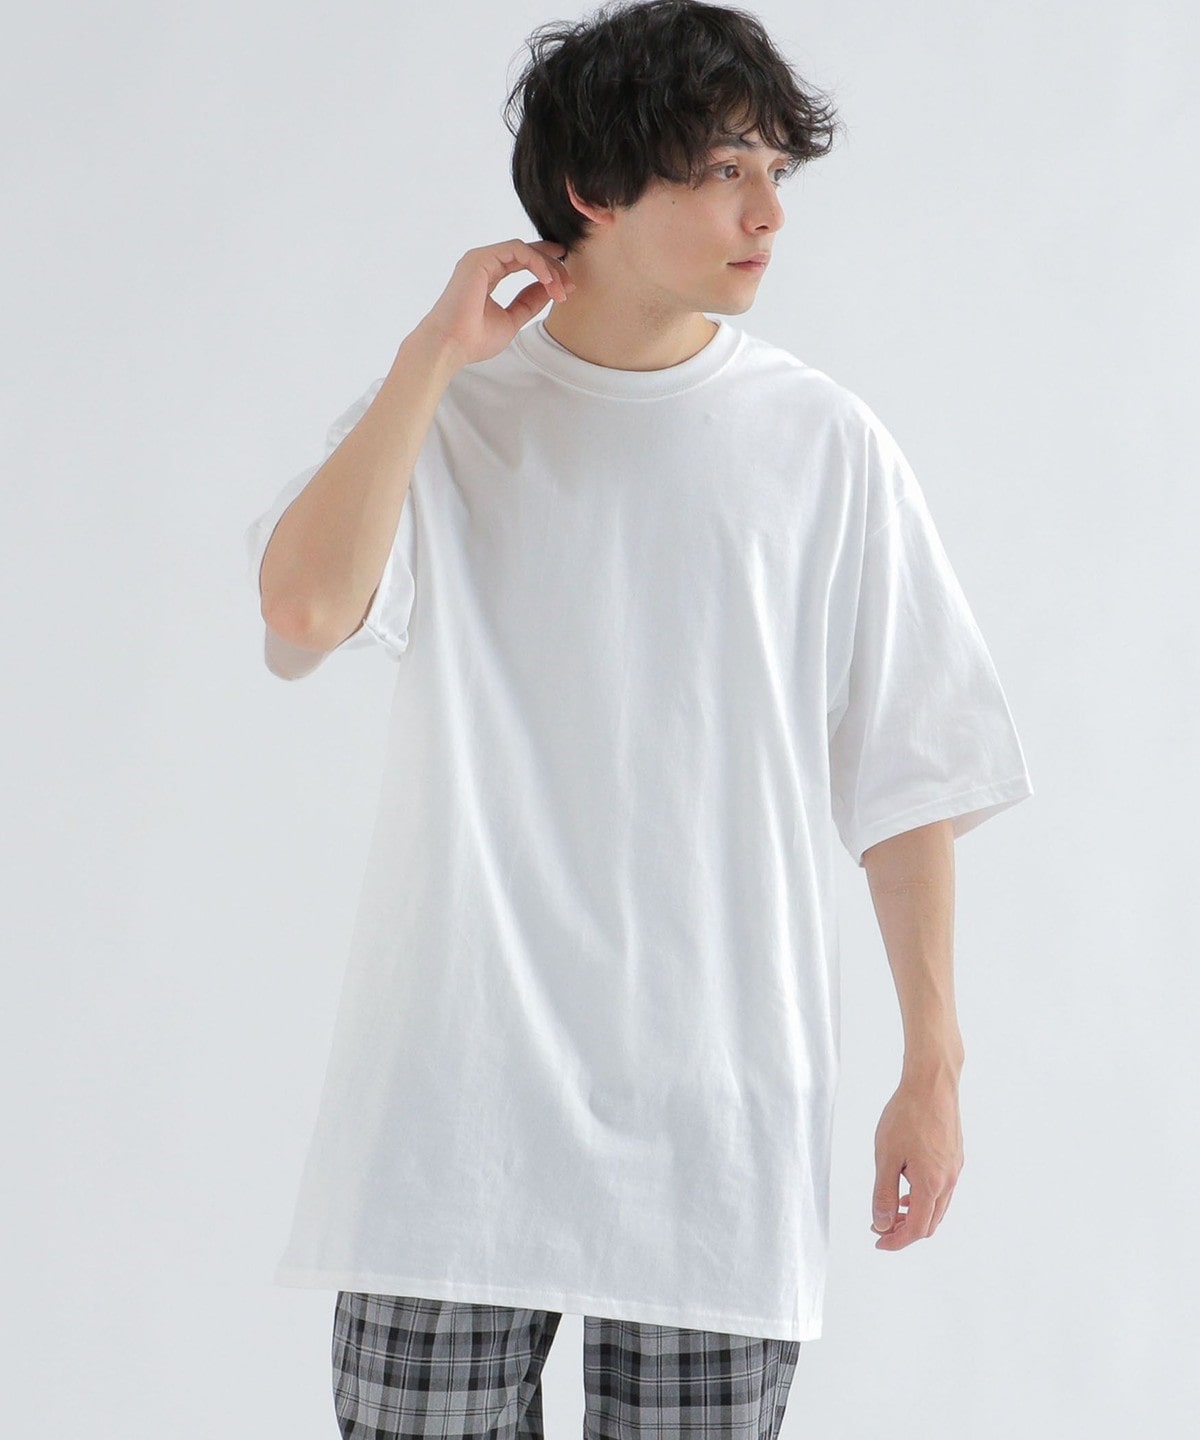 【WEB限定】PORT&COMPANY: ユニセックス ロング丈 ESSENTIAL Tシャツ◇ ホワイト